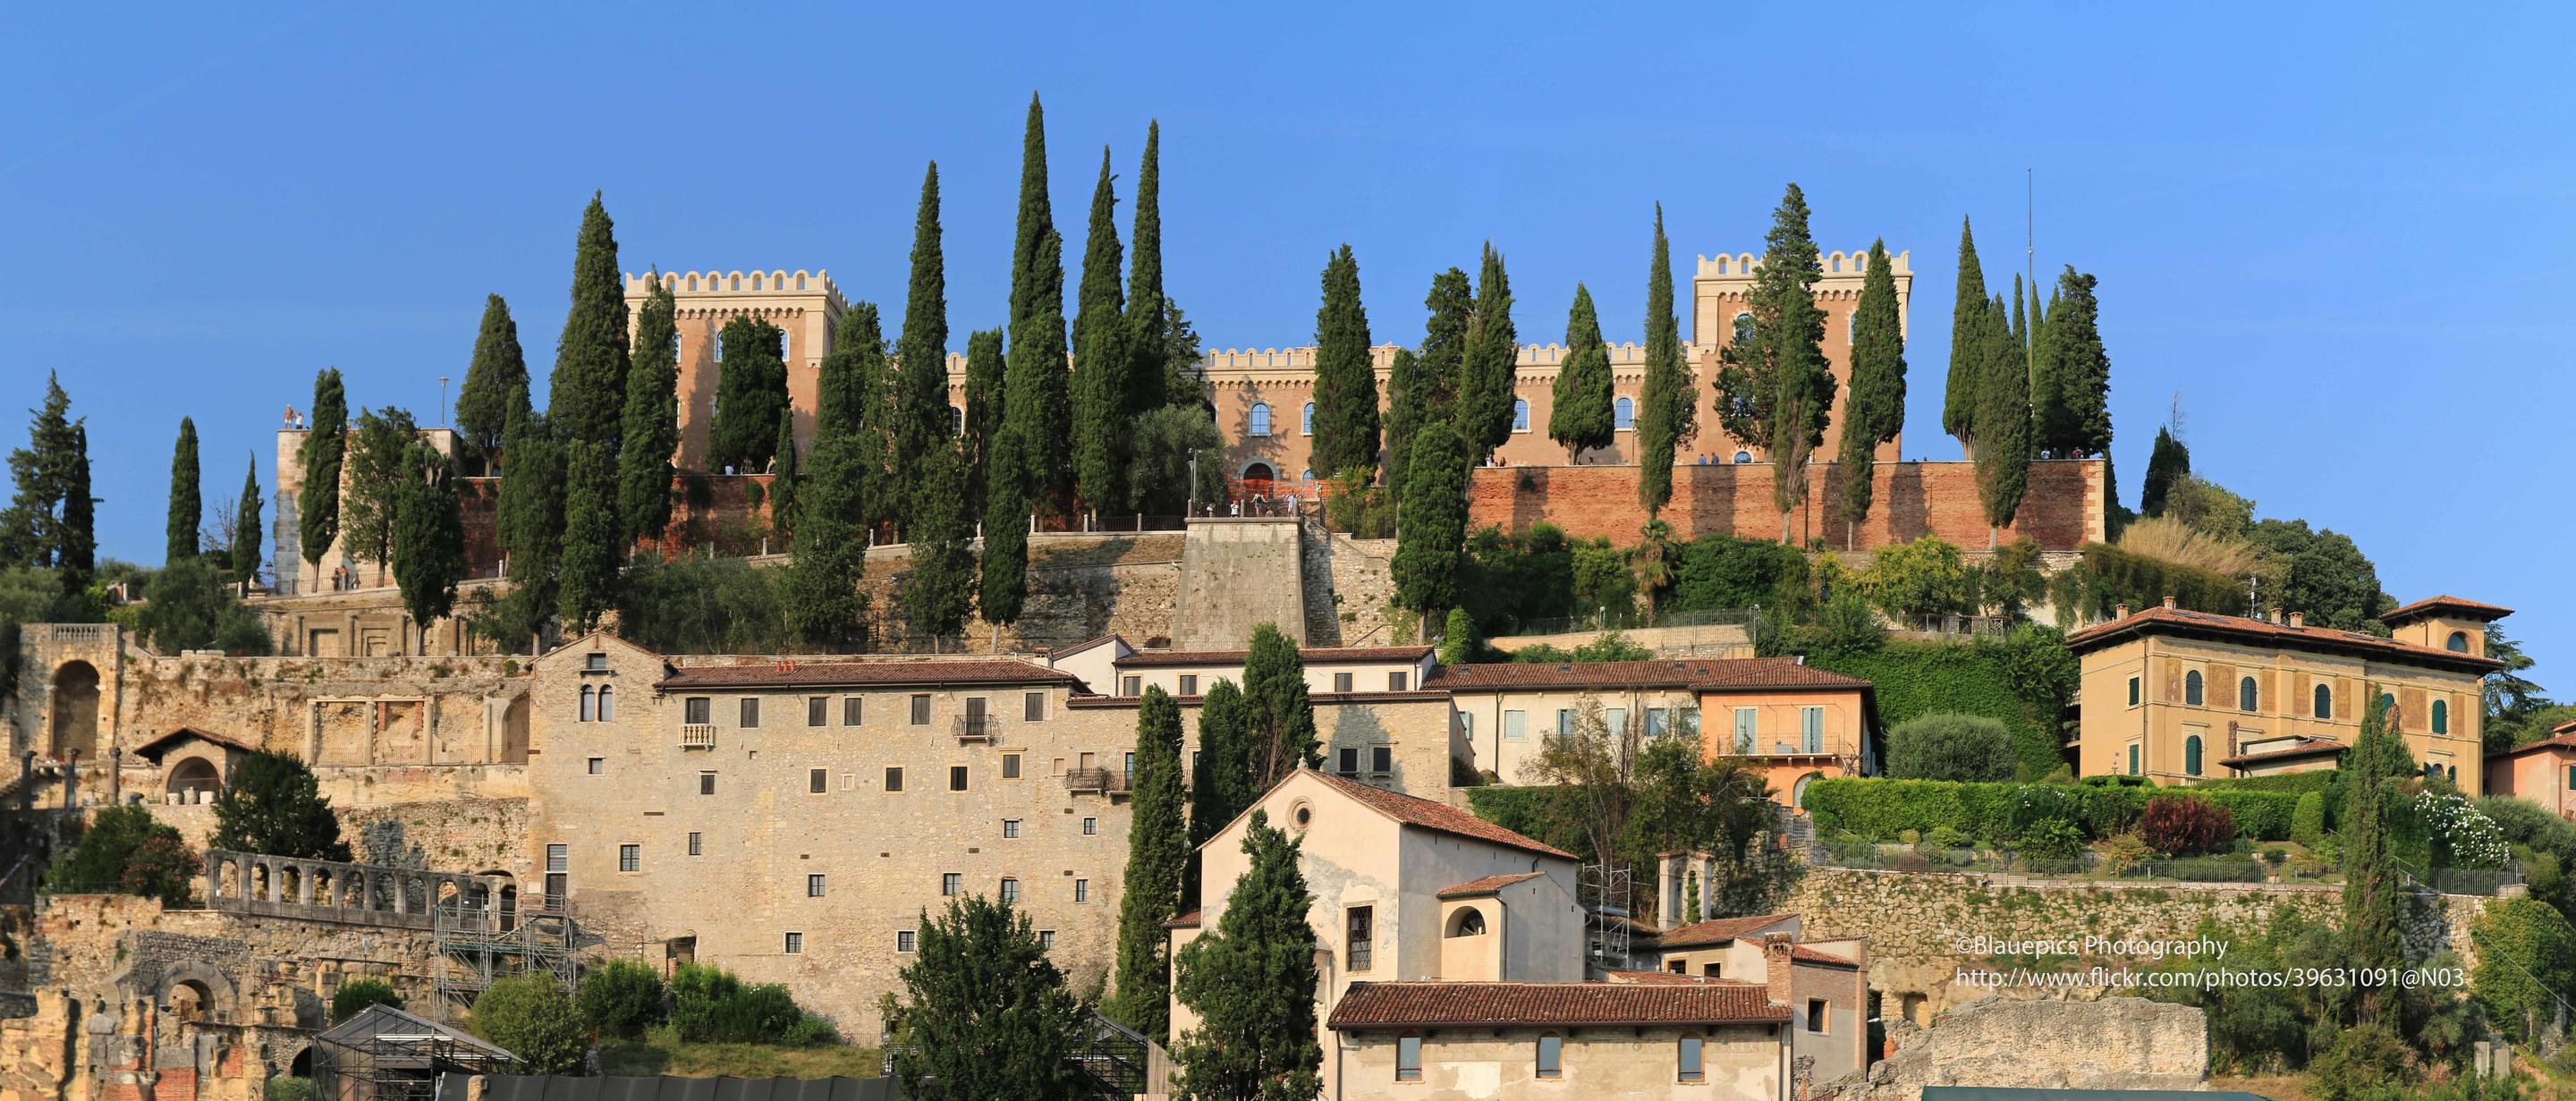 Castel San Pietro Verona Overview